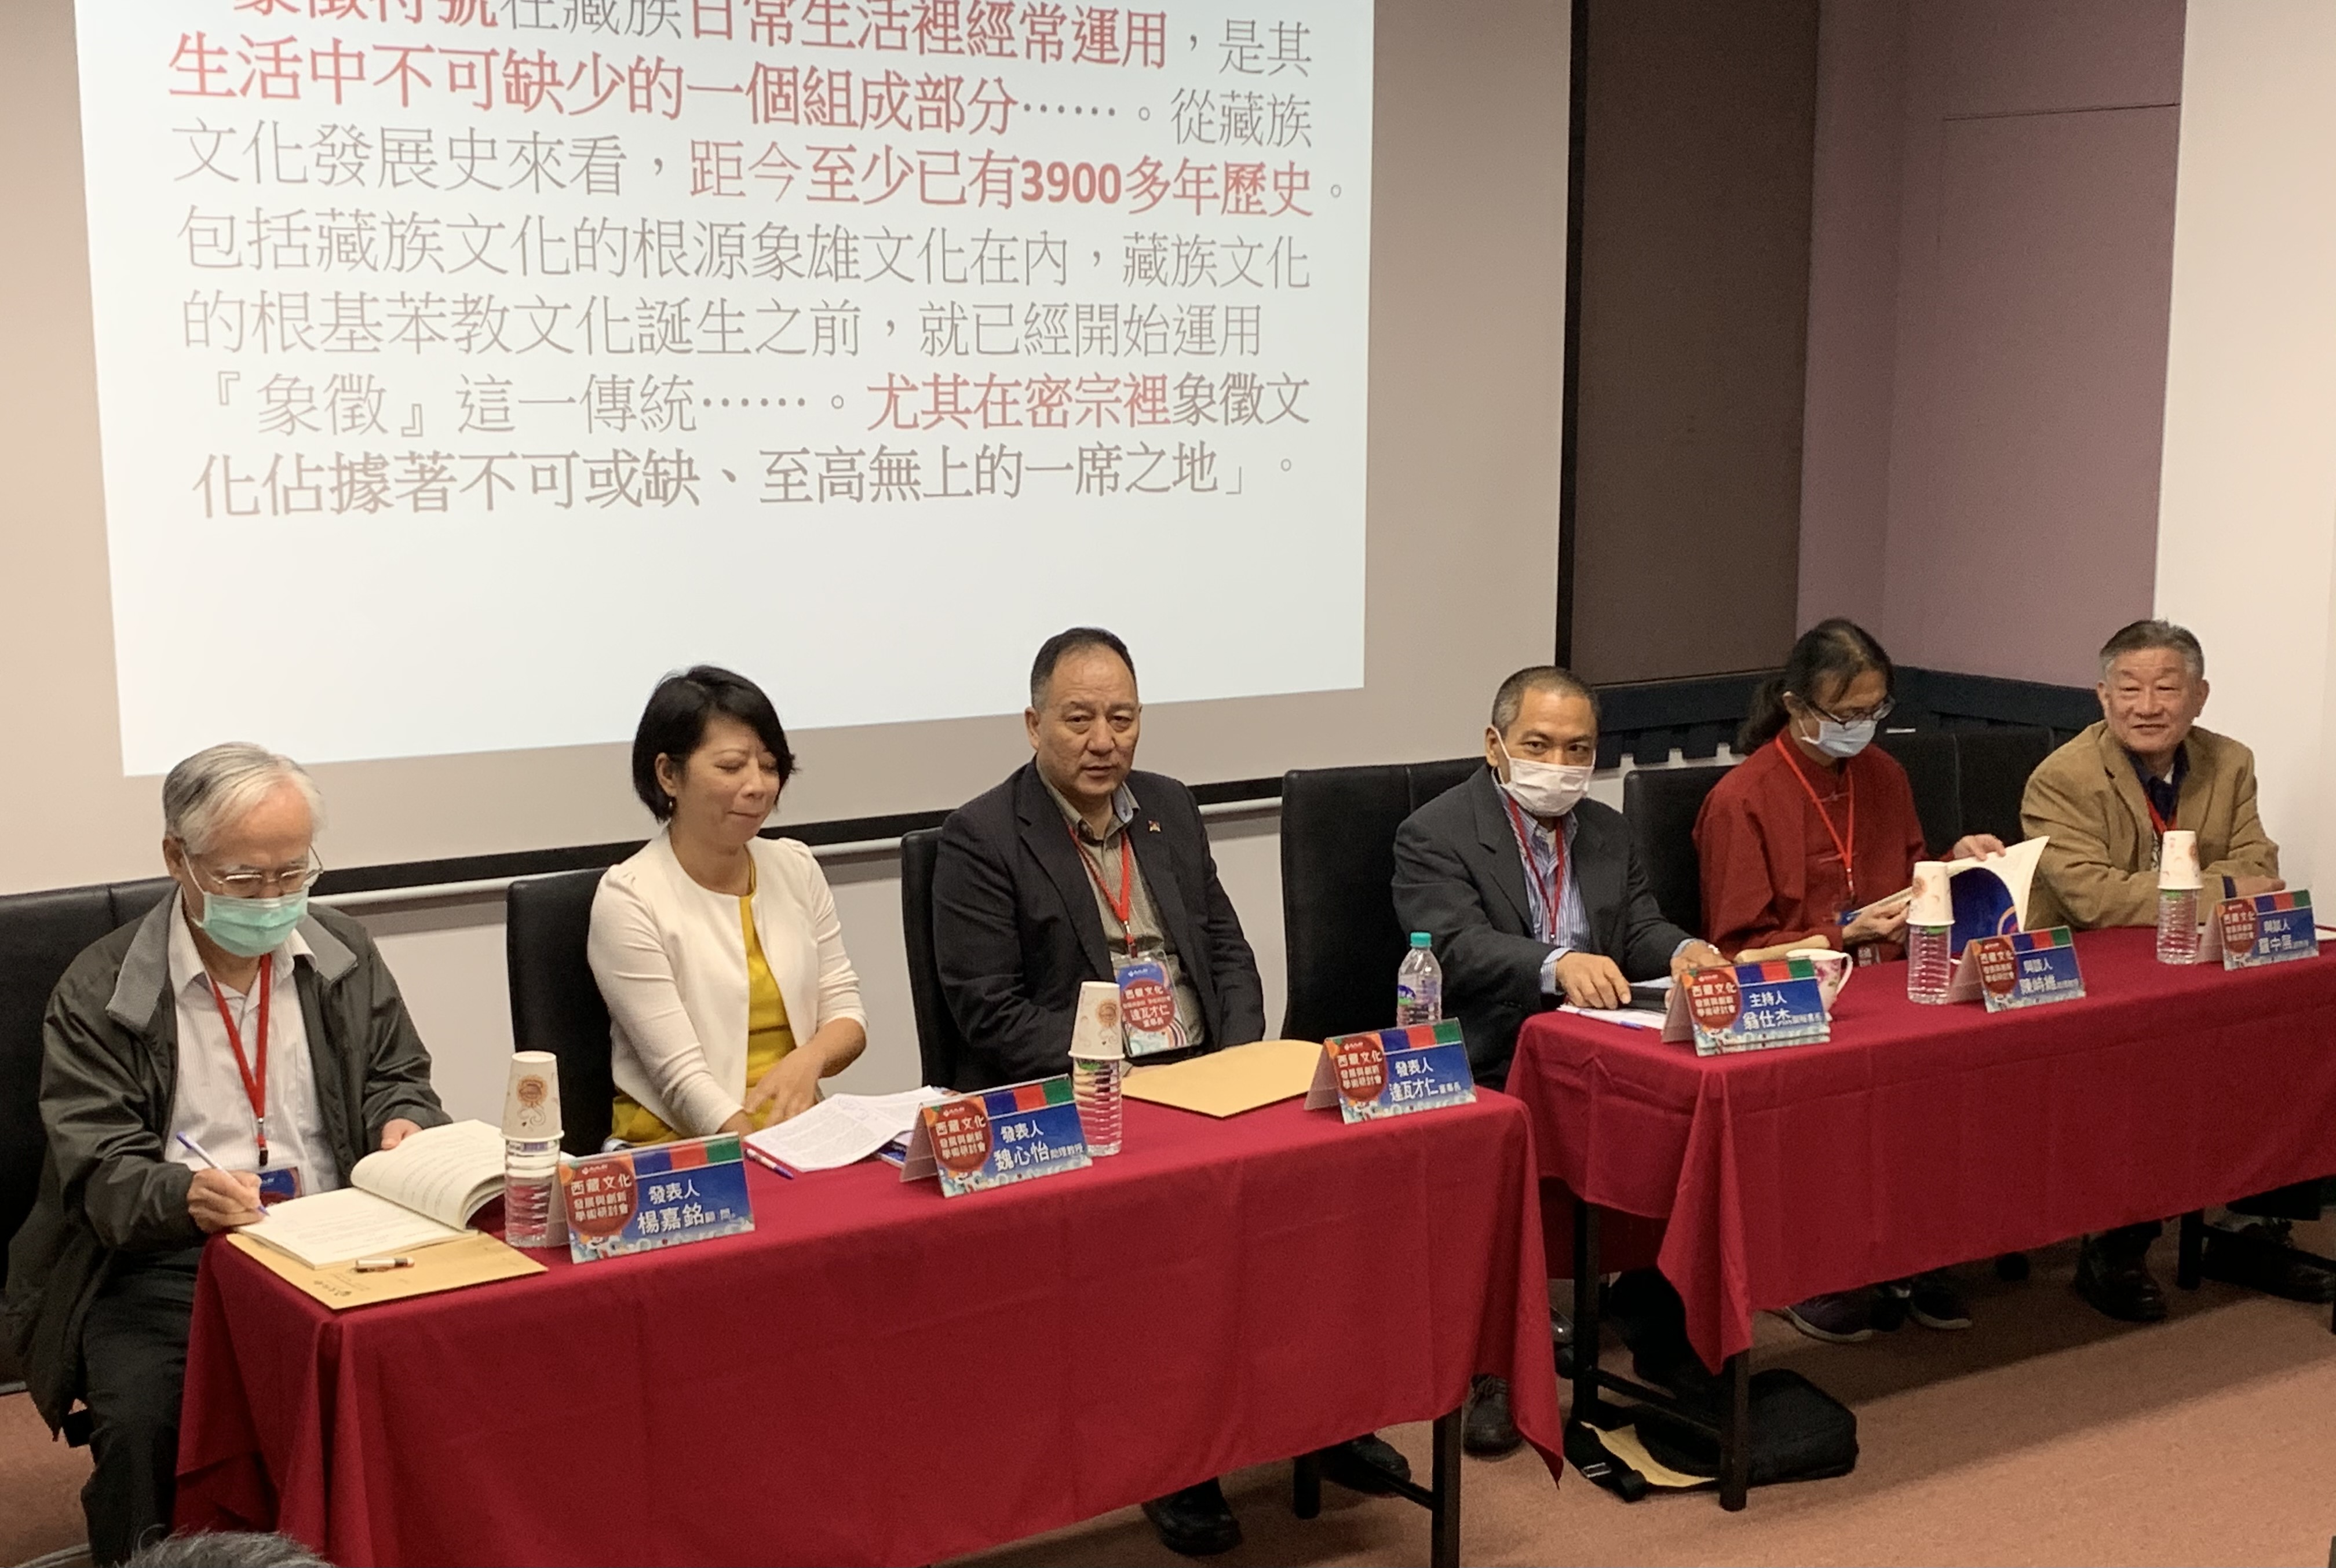 各界专家和学者出席台湾文化部主办的“西藏文化发展与创新学术研讨会” 2020年11月14日 照片/驻台湾办事处提供